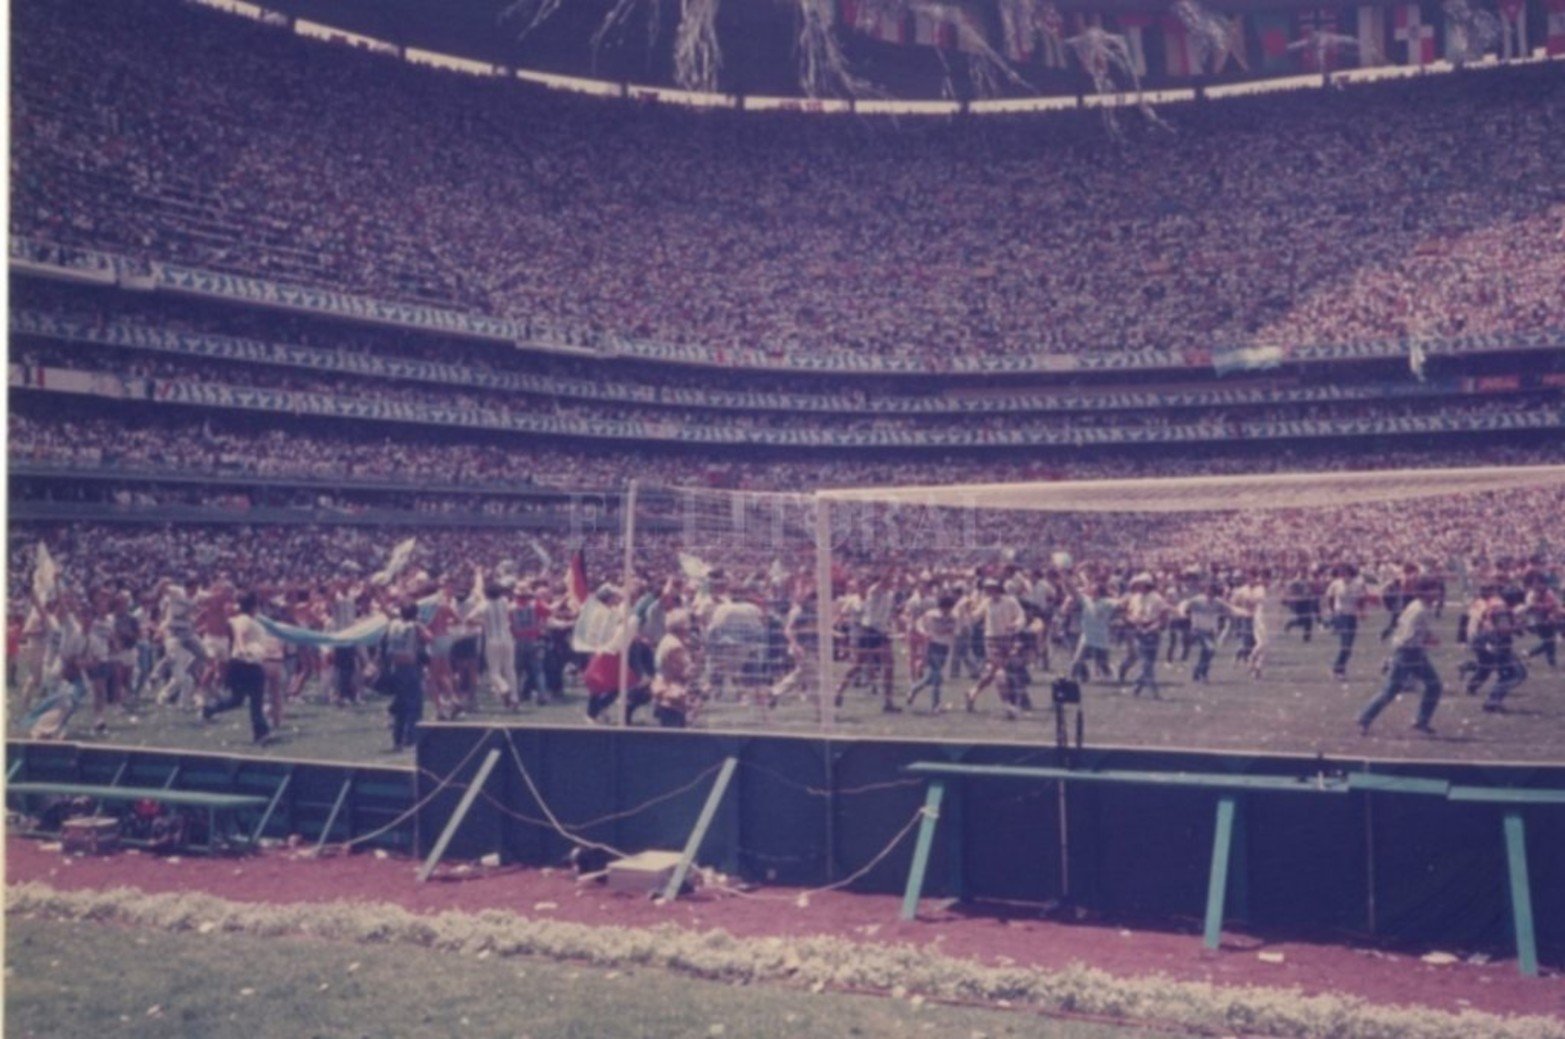 Una imagen inédita de lo que fue la vuelta olímpica argentina apenas finalizado el partido en el imponente Azteca, repleto con 115.000 espectadores.